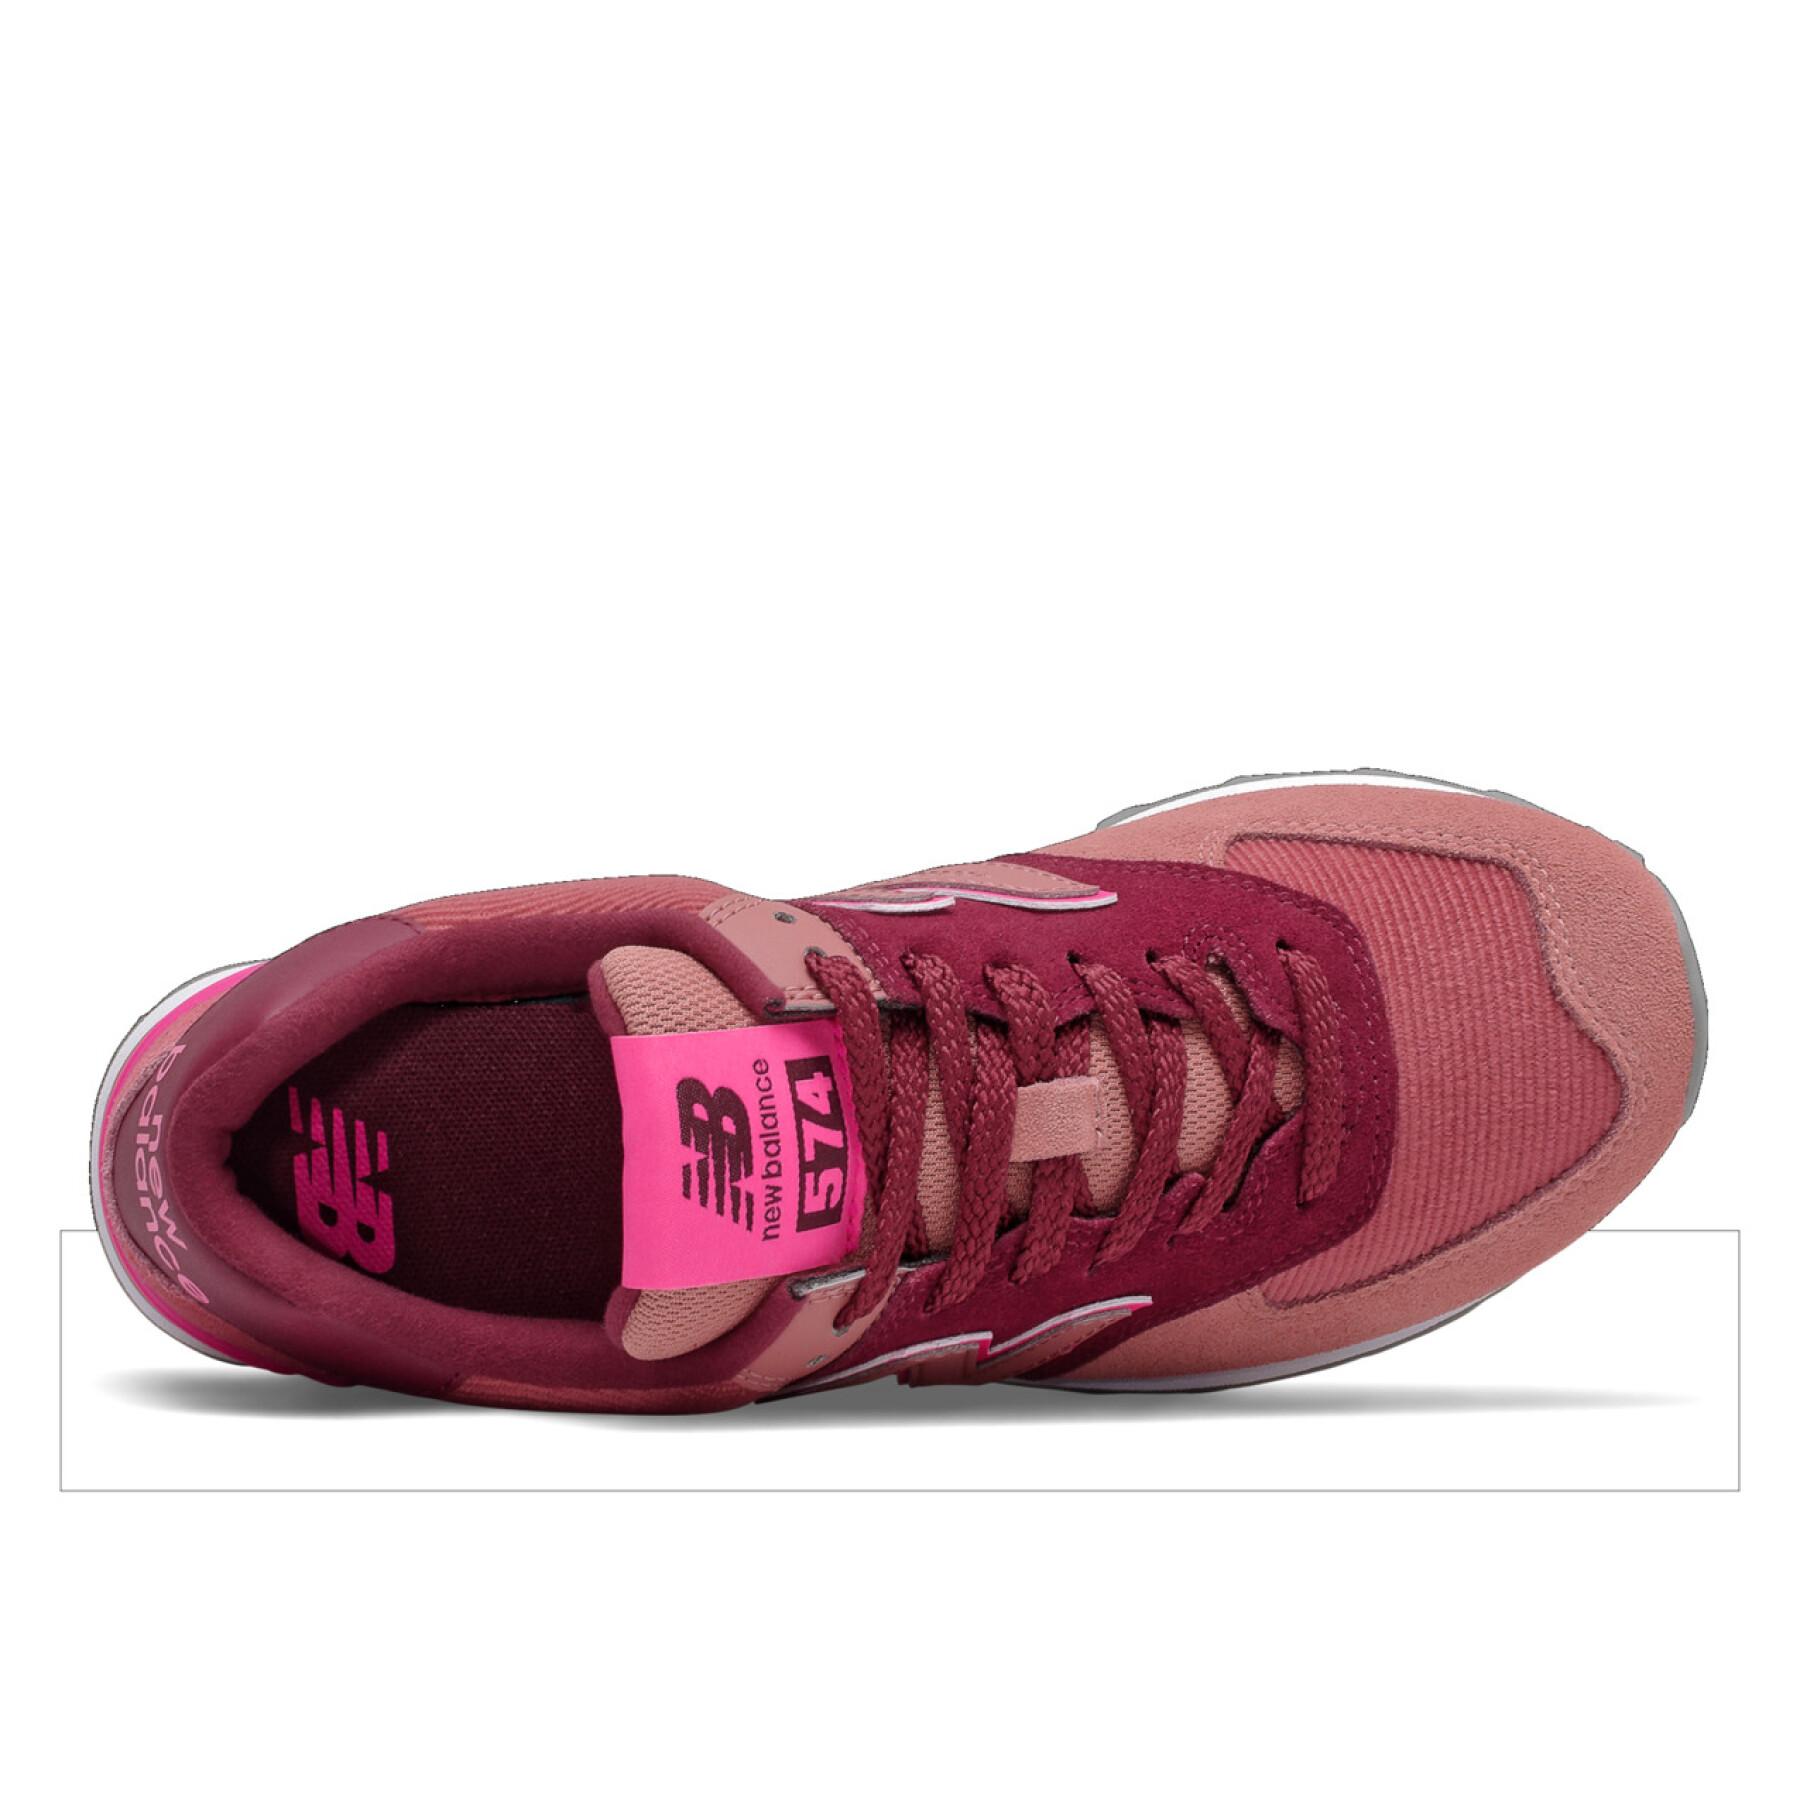 Chaussures femme New Balance 574